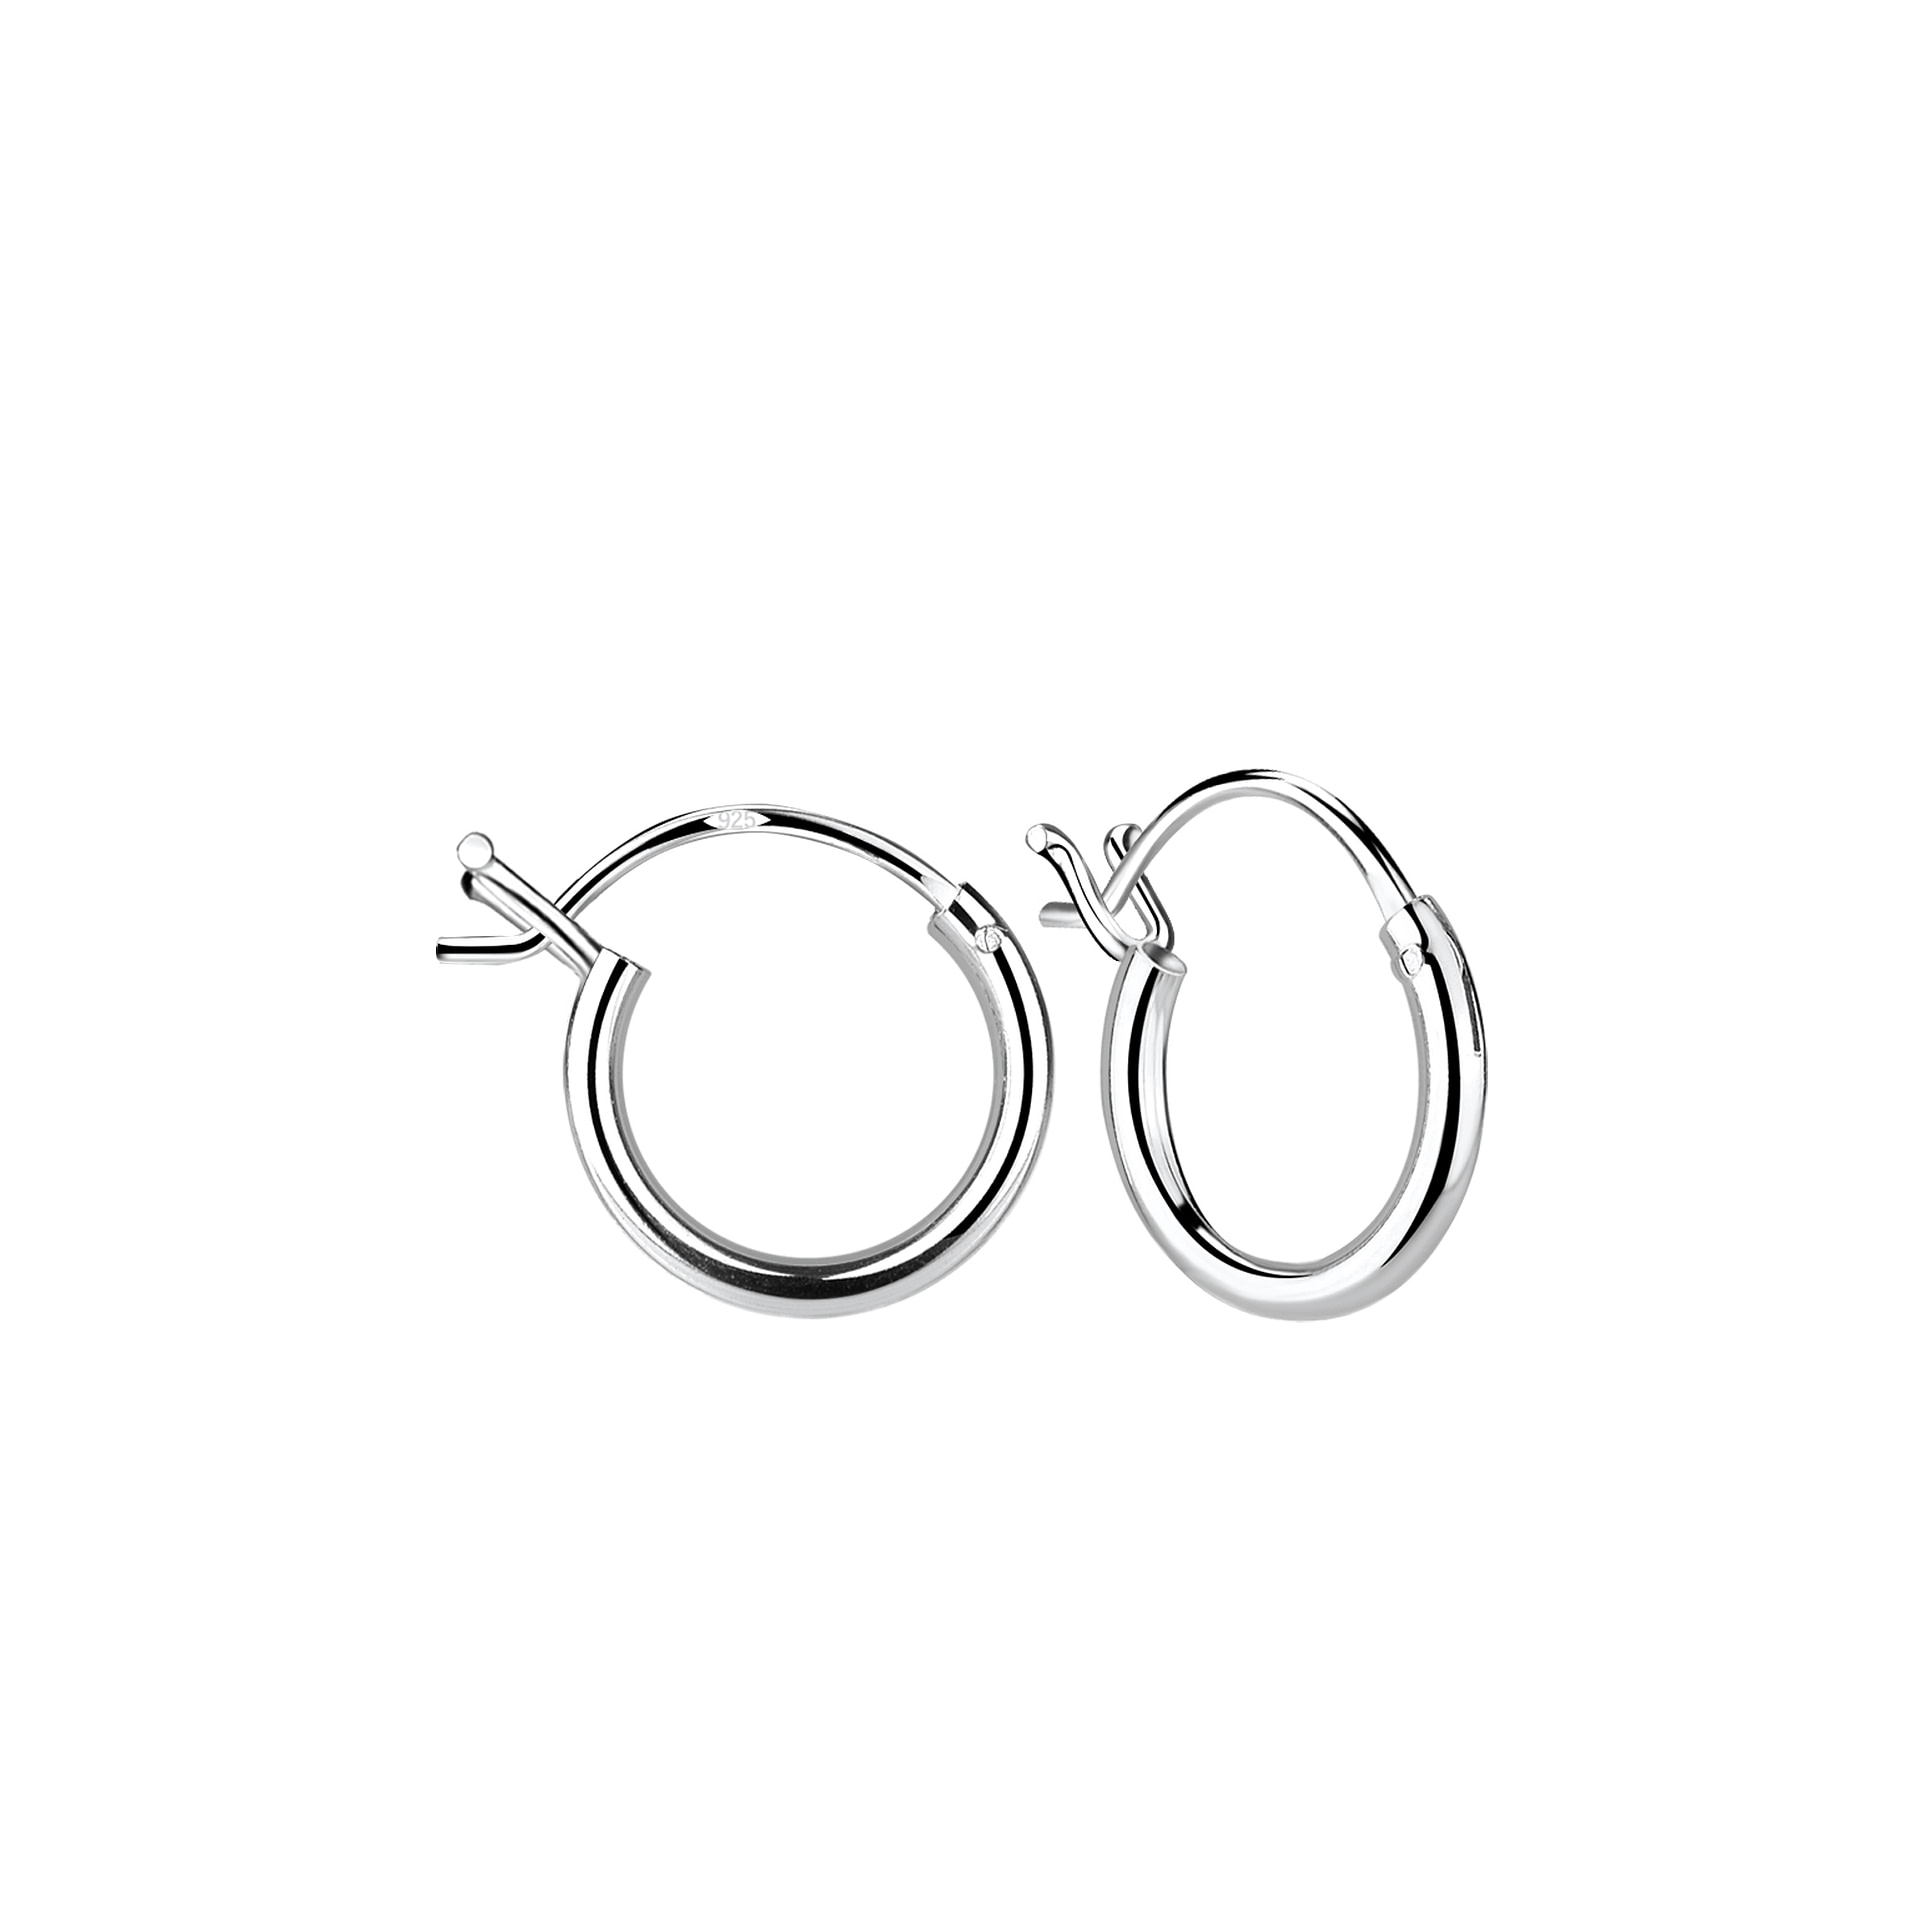 925 Sterling Silver 16mm French Lock Bali Hoop Sleeper Earrings Design 7 Pair 